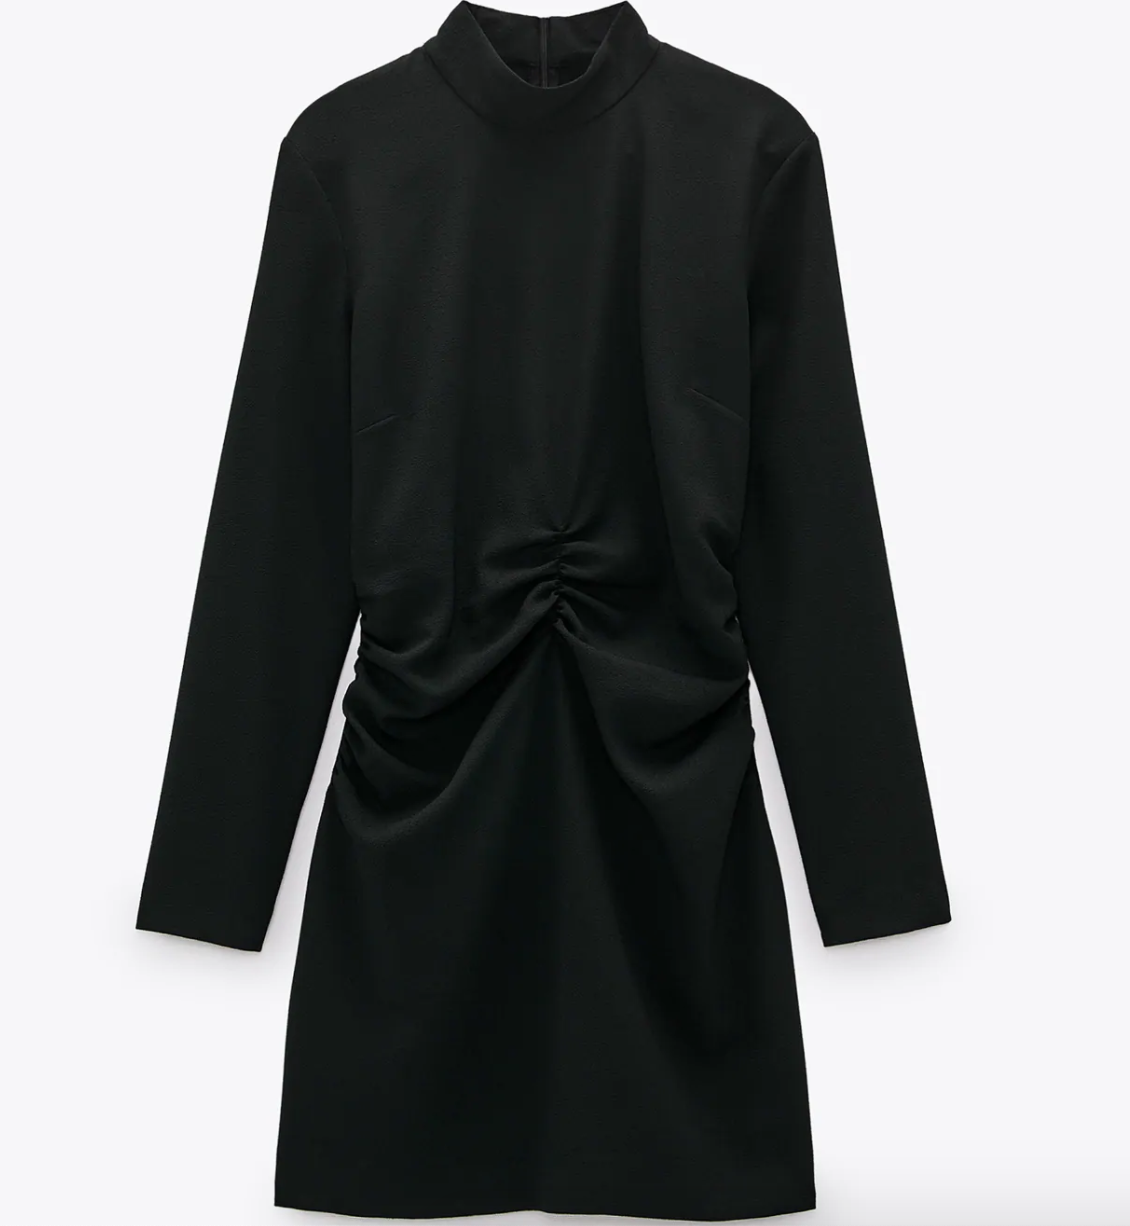 Ahora puedes conseguir el estilo de Audrey Hepburn con prendas de Zara